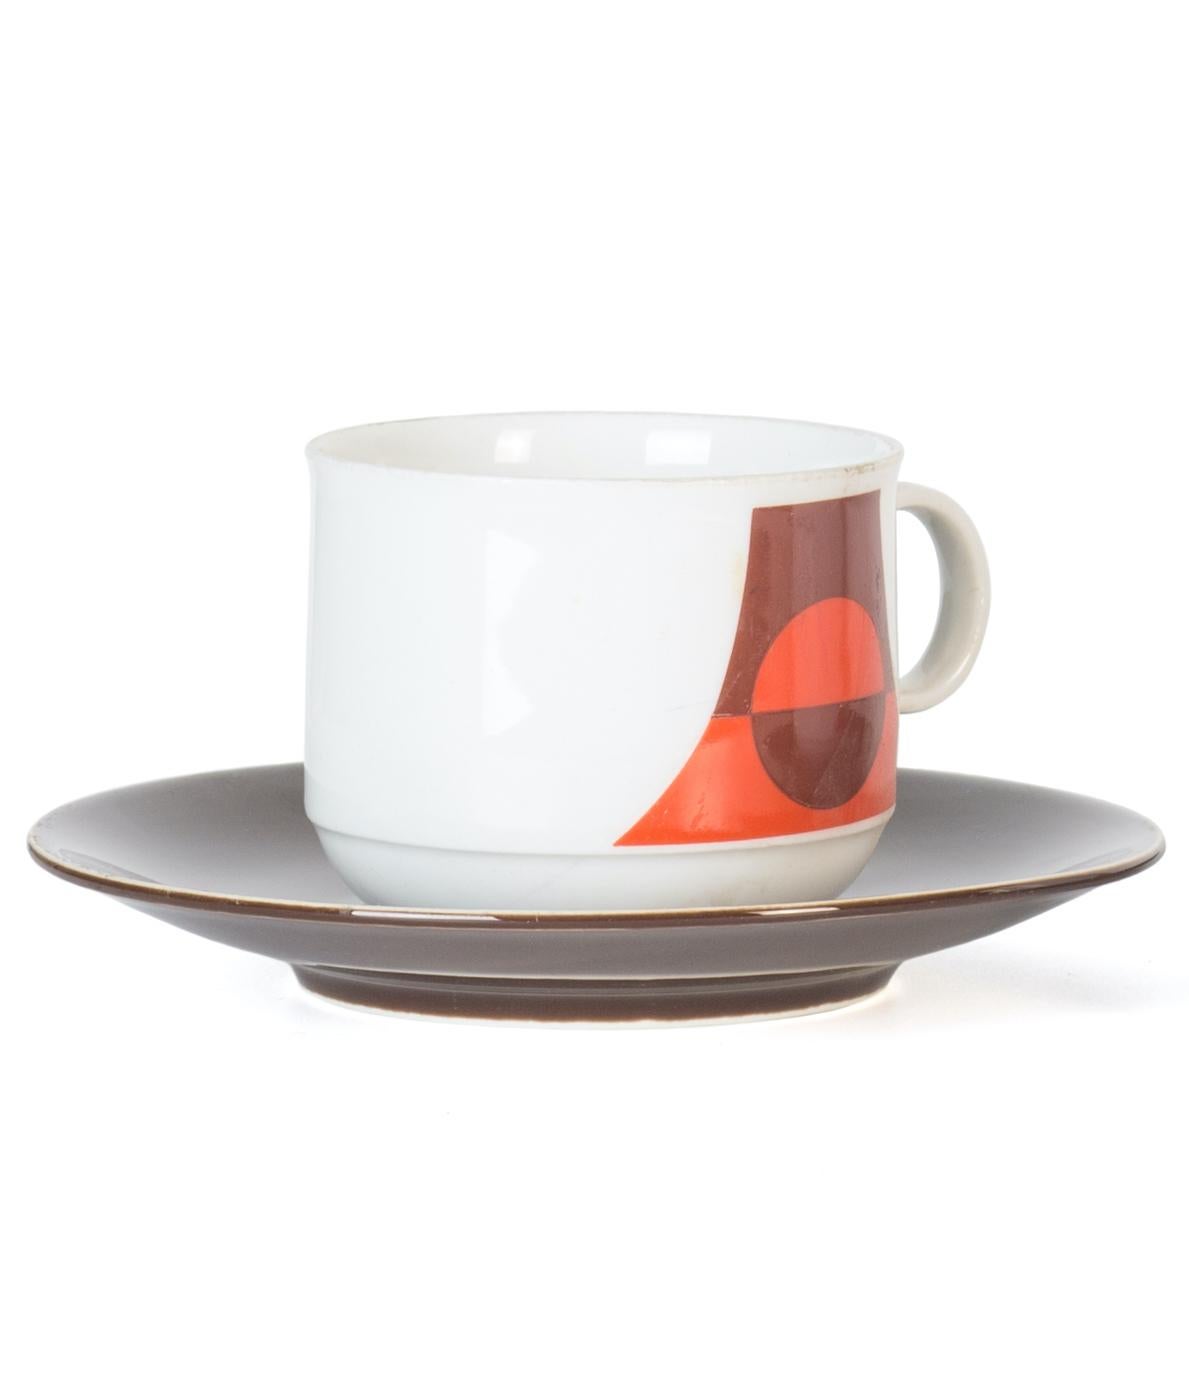 Seltmann Weiden Kaffeeservice ist ein elegantes Porzellan dekorative Set, realisiert in den 1970er Jahren Jahrhundert von Seltmann Weiden Bayern

Dies ist ein sehr elegantes Kaffeeservice mit geometrischem Dekor in Orange und Braun.

Die